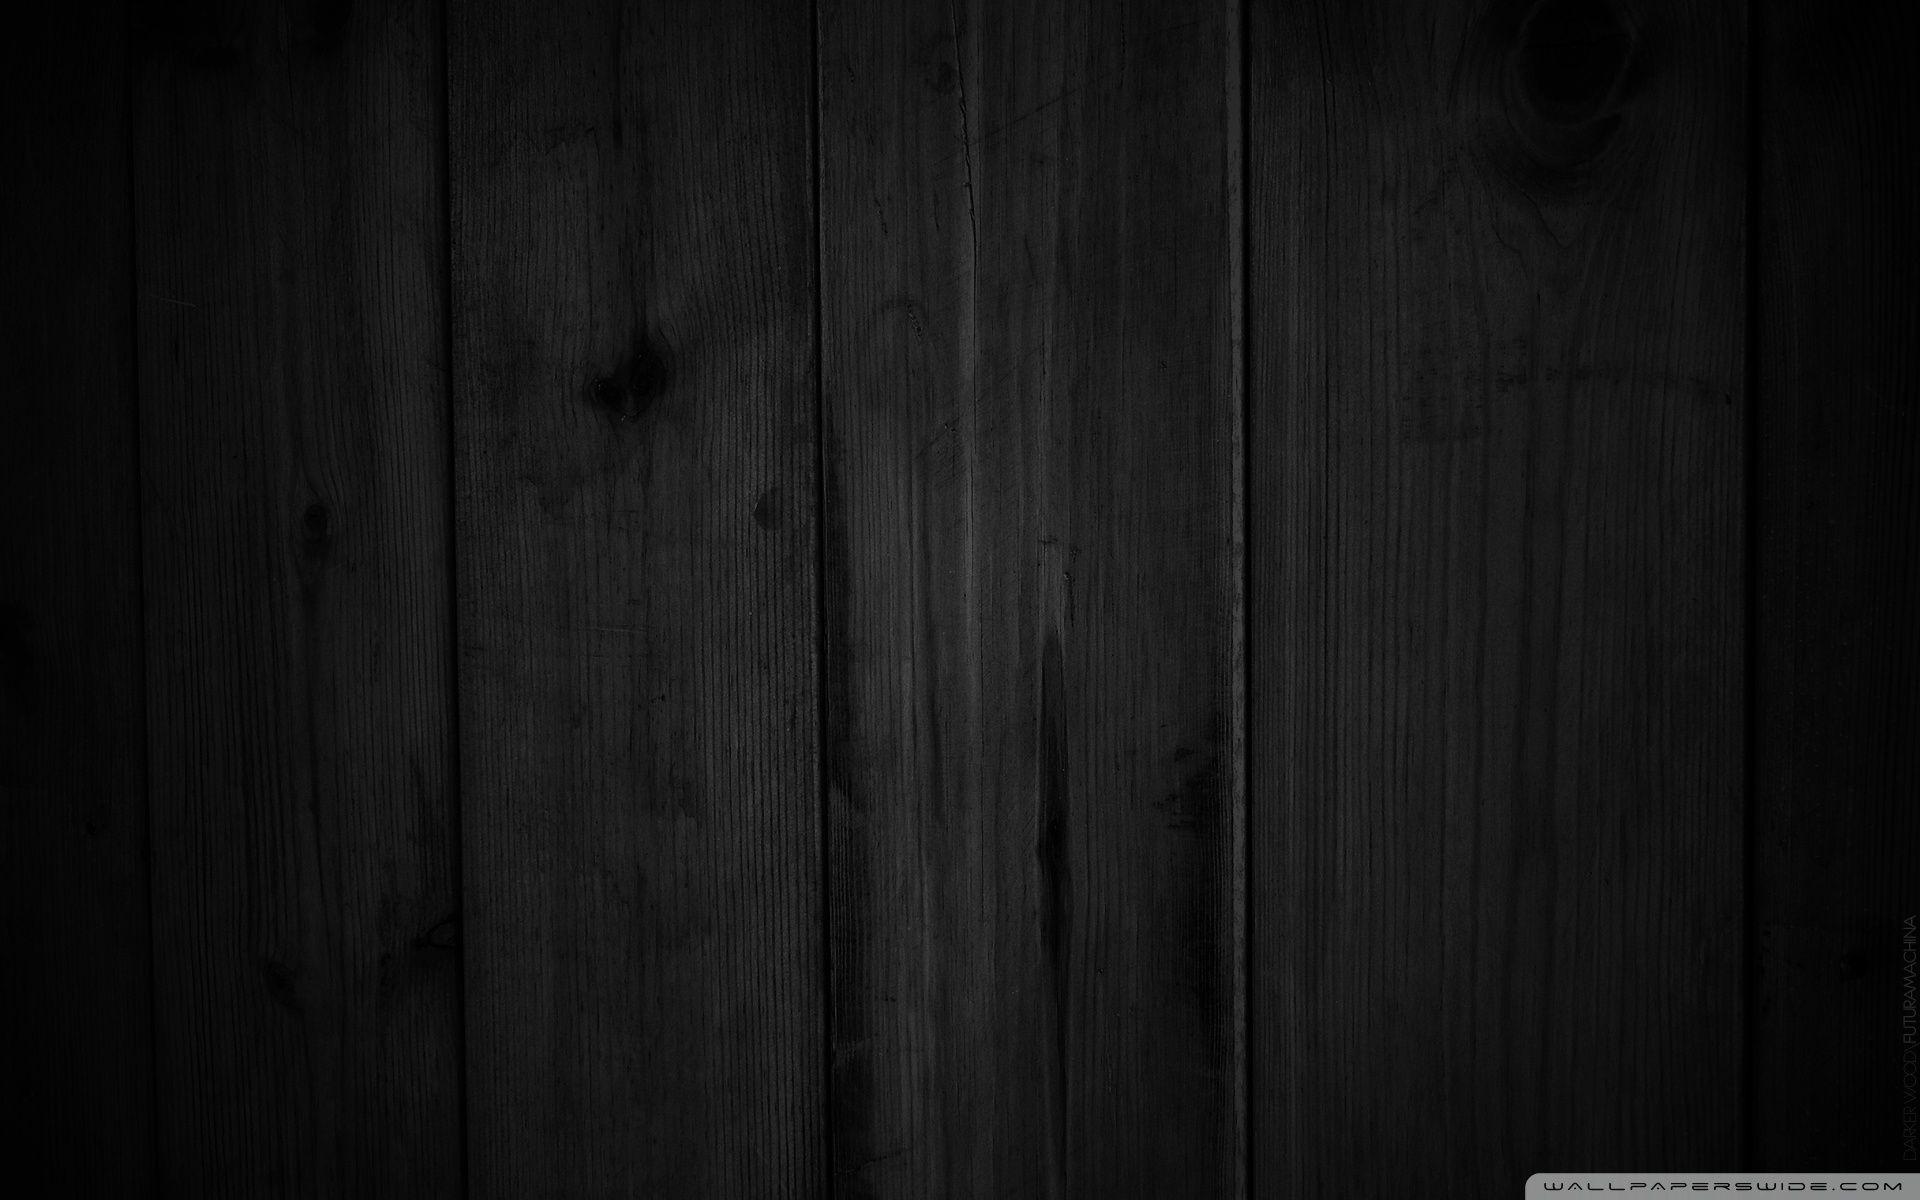 Hình nền gỗ đen đẹp nhất: Nếu bạn muốn tìm một mẫu hình nền đẹp và độc đáo cho desktop của mình, thì không còn gì tuyệt vời hơn hình nền gỗ đen đẹp. Với sự kết hợp giữa màu đen tuyền lịch lãm và vân gỗ đẹp nhất, các mẫu hình nền gỗ đen này sẽ làm cho màn hình của bạn trở nên sang trọng và thu hút hơn bao giờ hết.